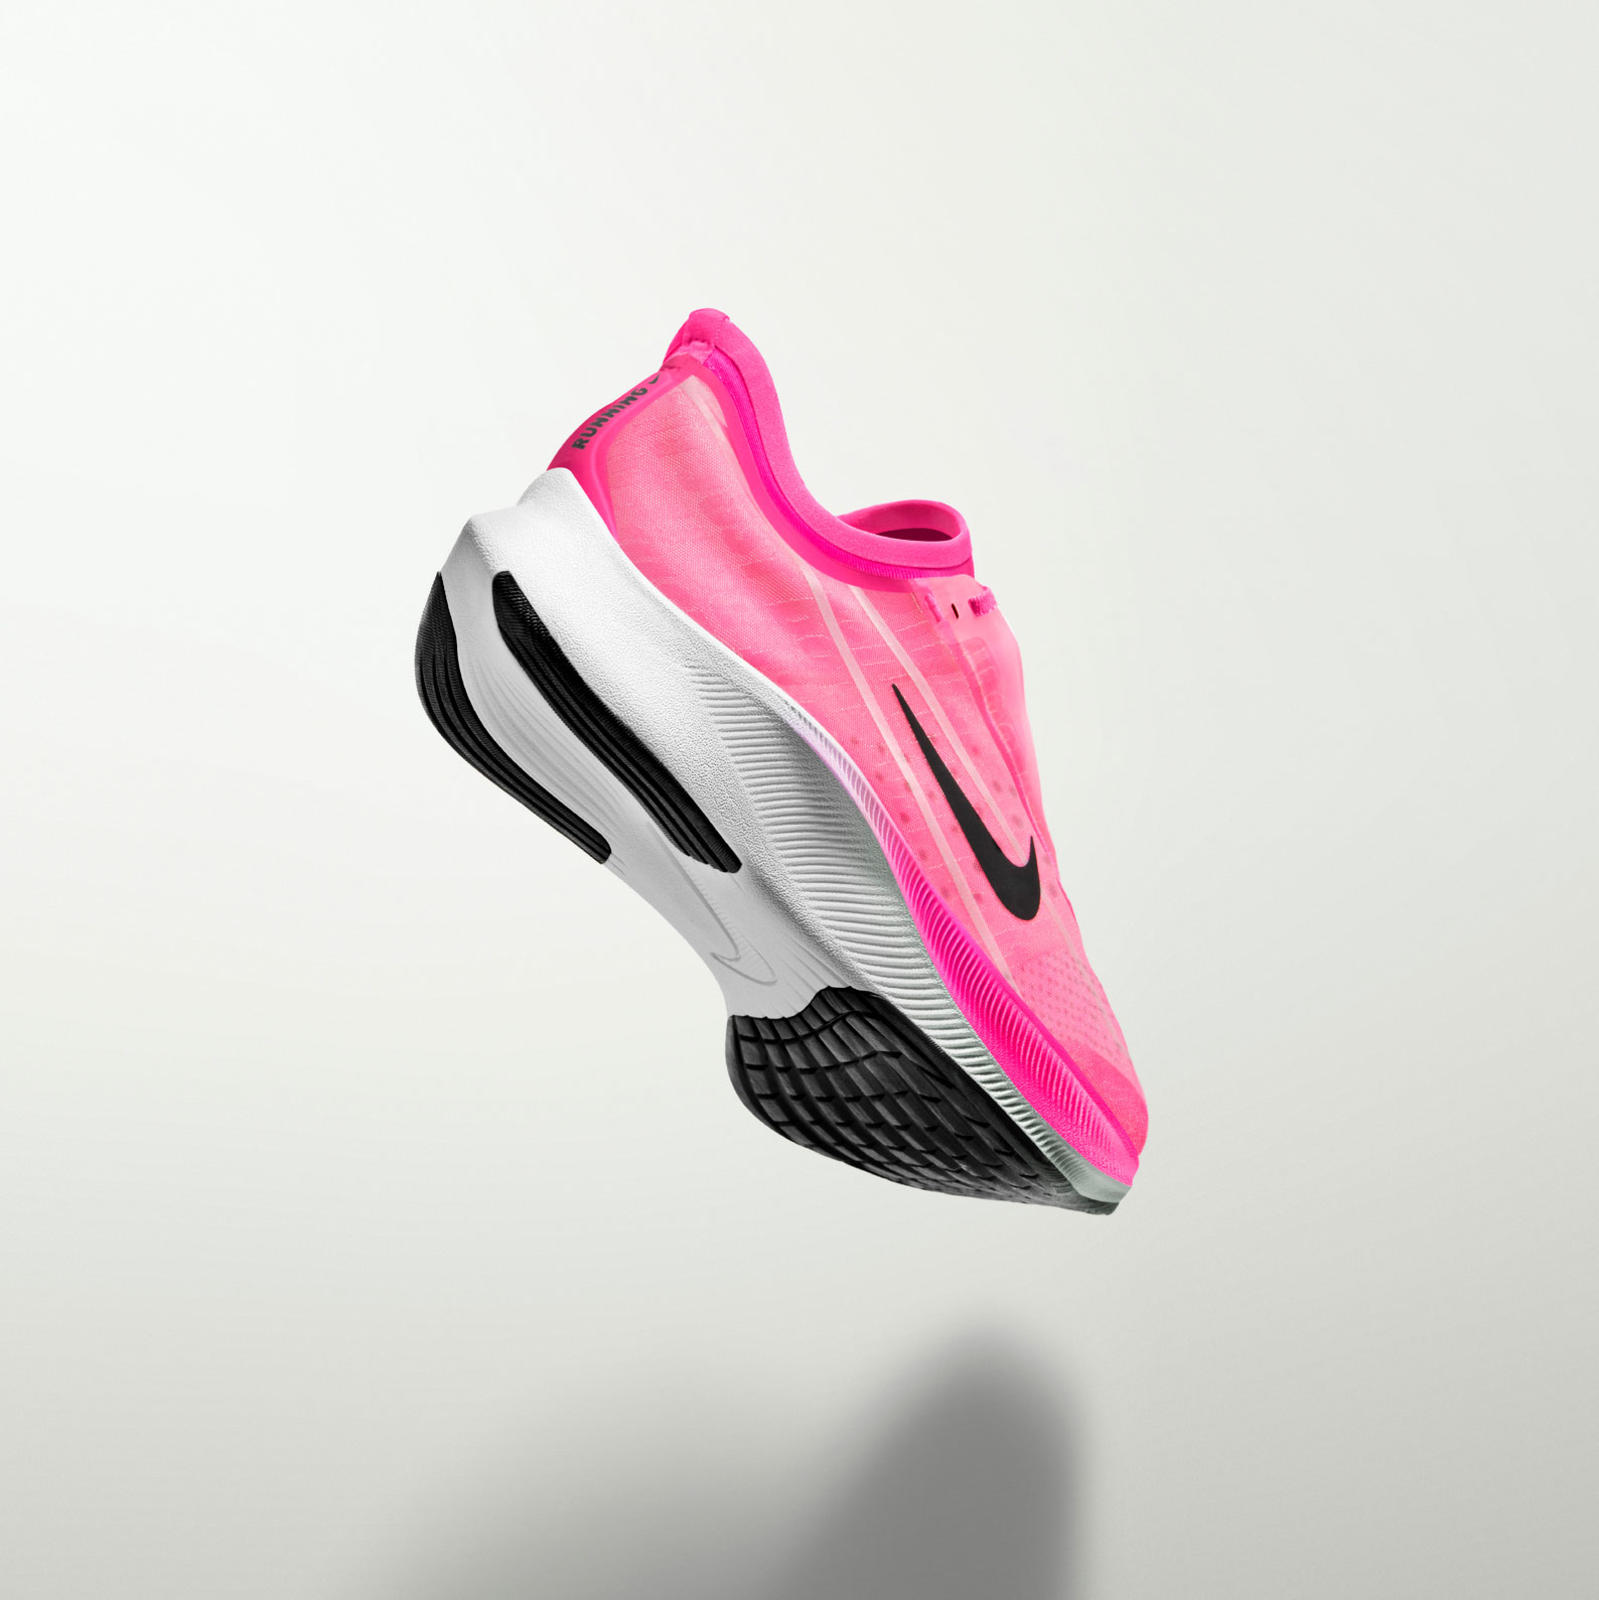 Sepatu 'Nike Zoom' Hadir Dalam Warna Pink Neon